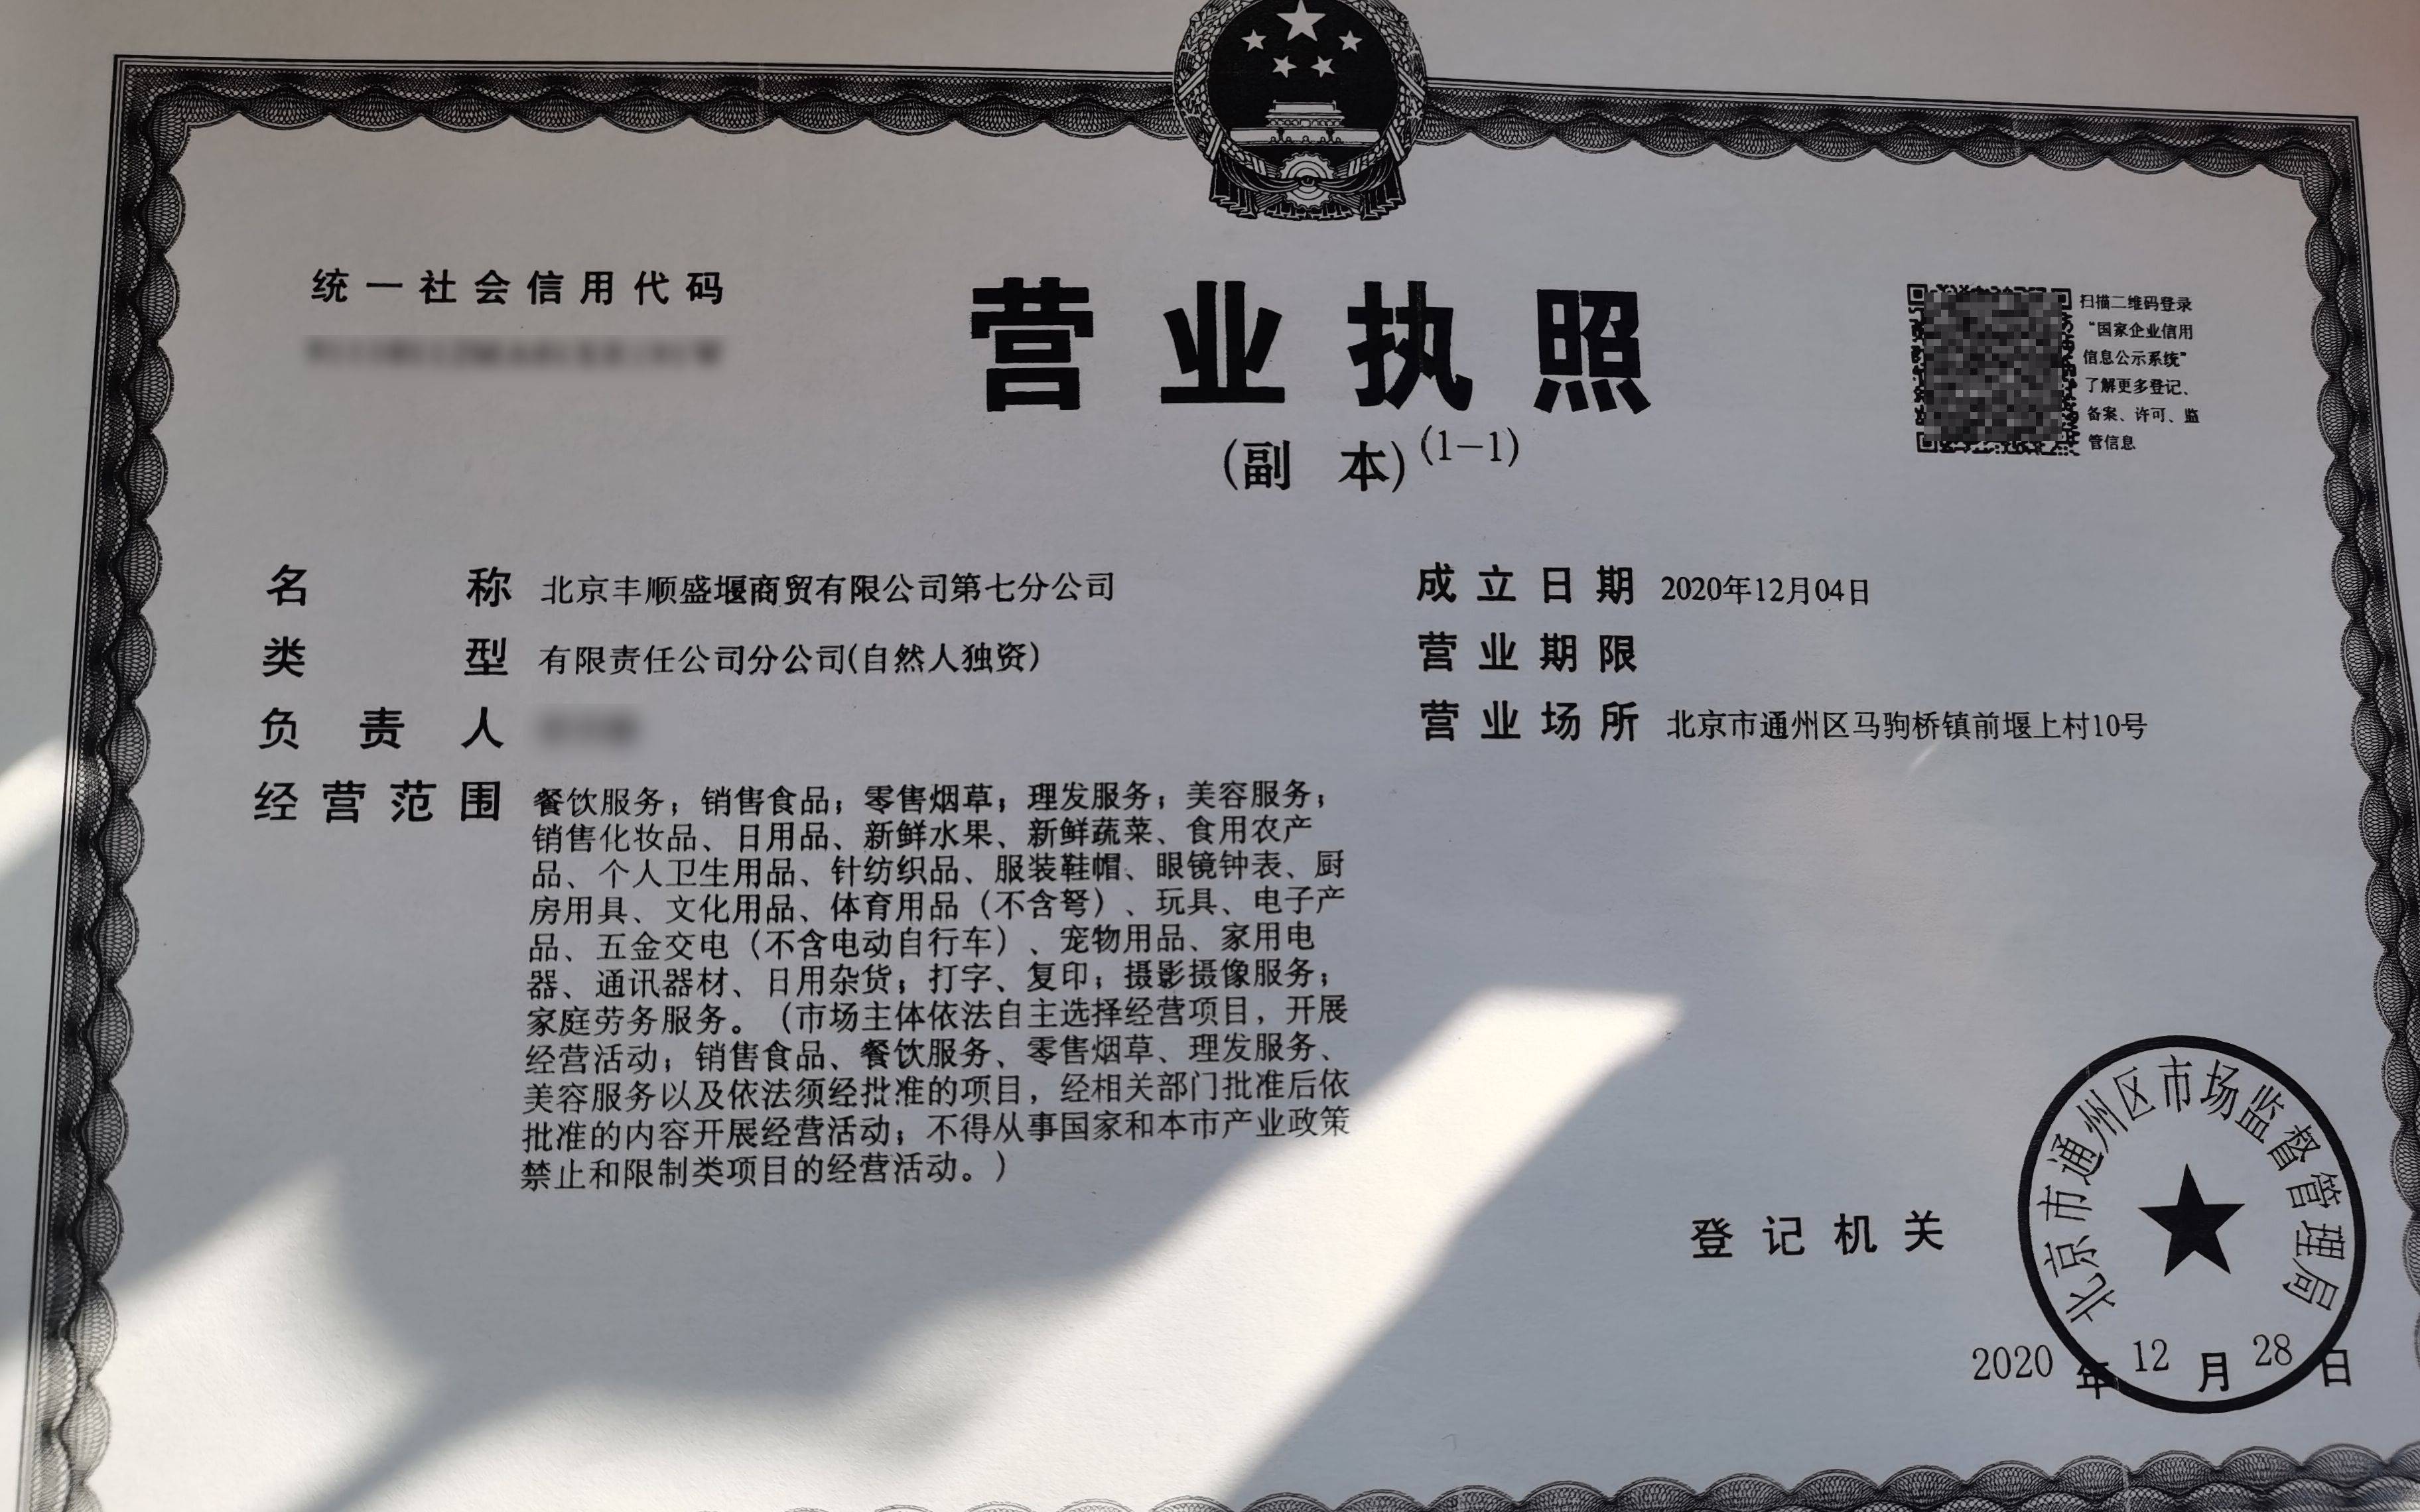 通州马驹桥镇启动村级营业执照登记 700余户村民领"大照"